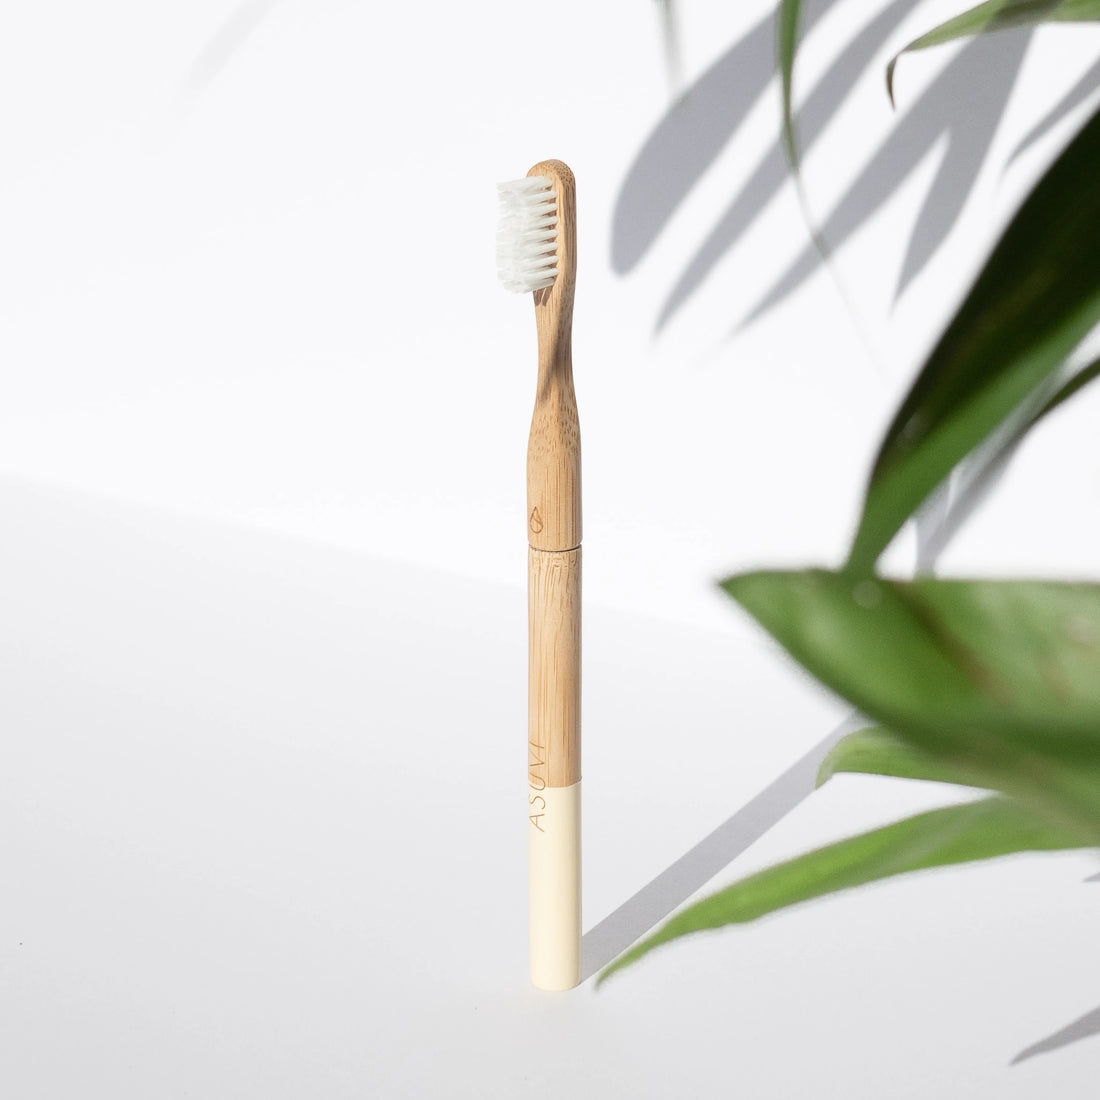 Asuvi Bamboo Toothbrush - S 環保竹牙刷 - 軟毛